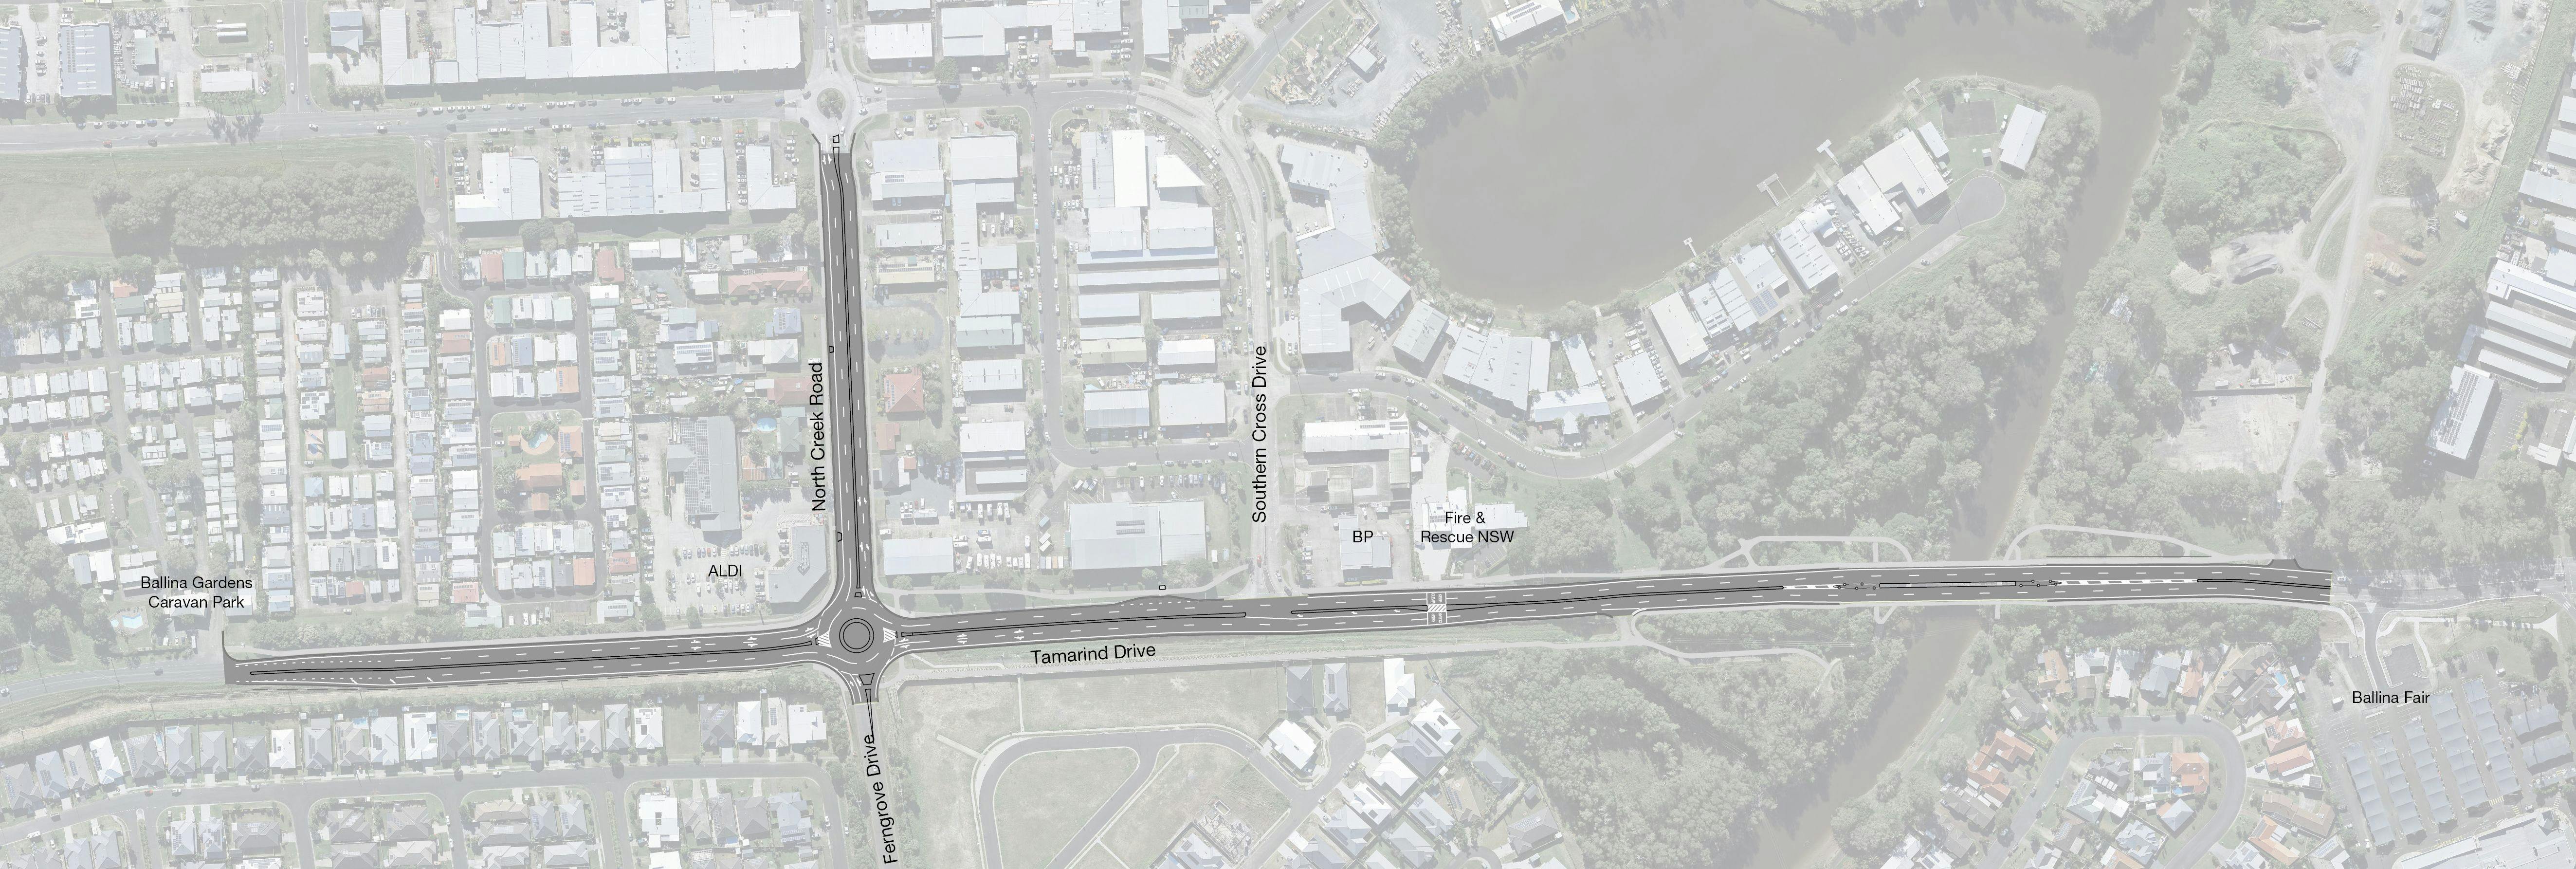 Tamarind Drive proposed lane duplication